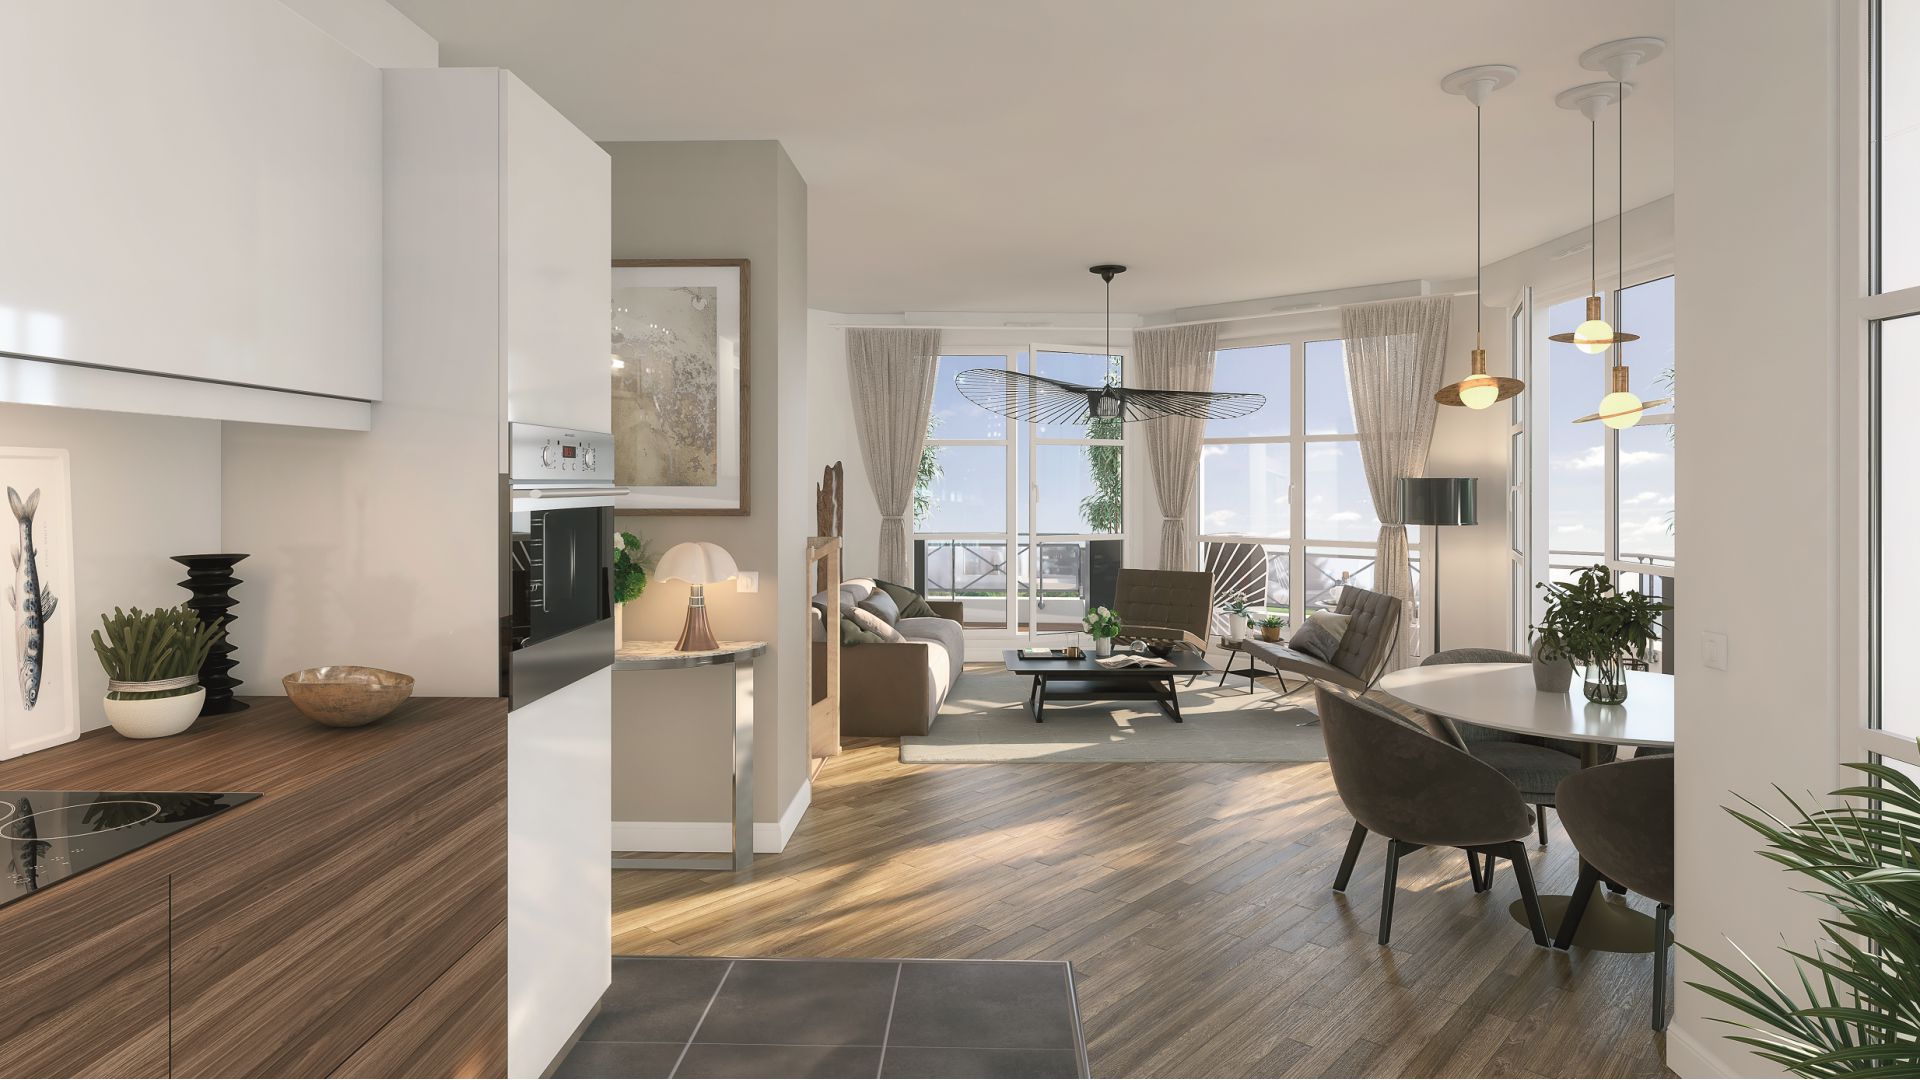 GreenCity immobilier - Le Blanc Mesnil - 93150 - appartements neufs du T1 au T4 - vue intérieure